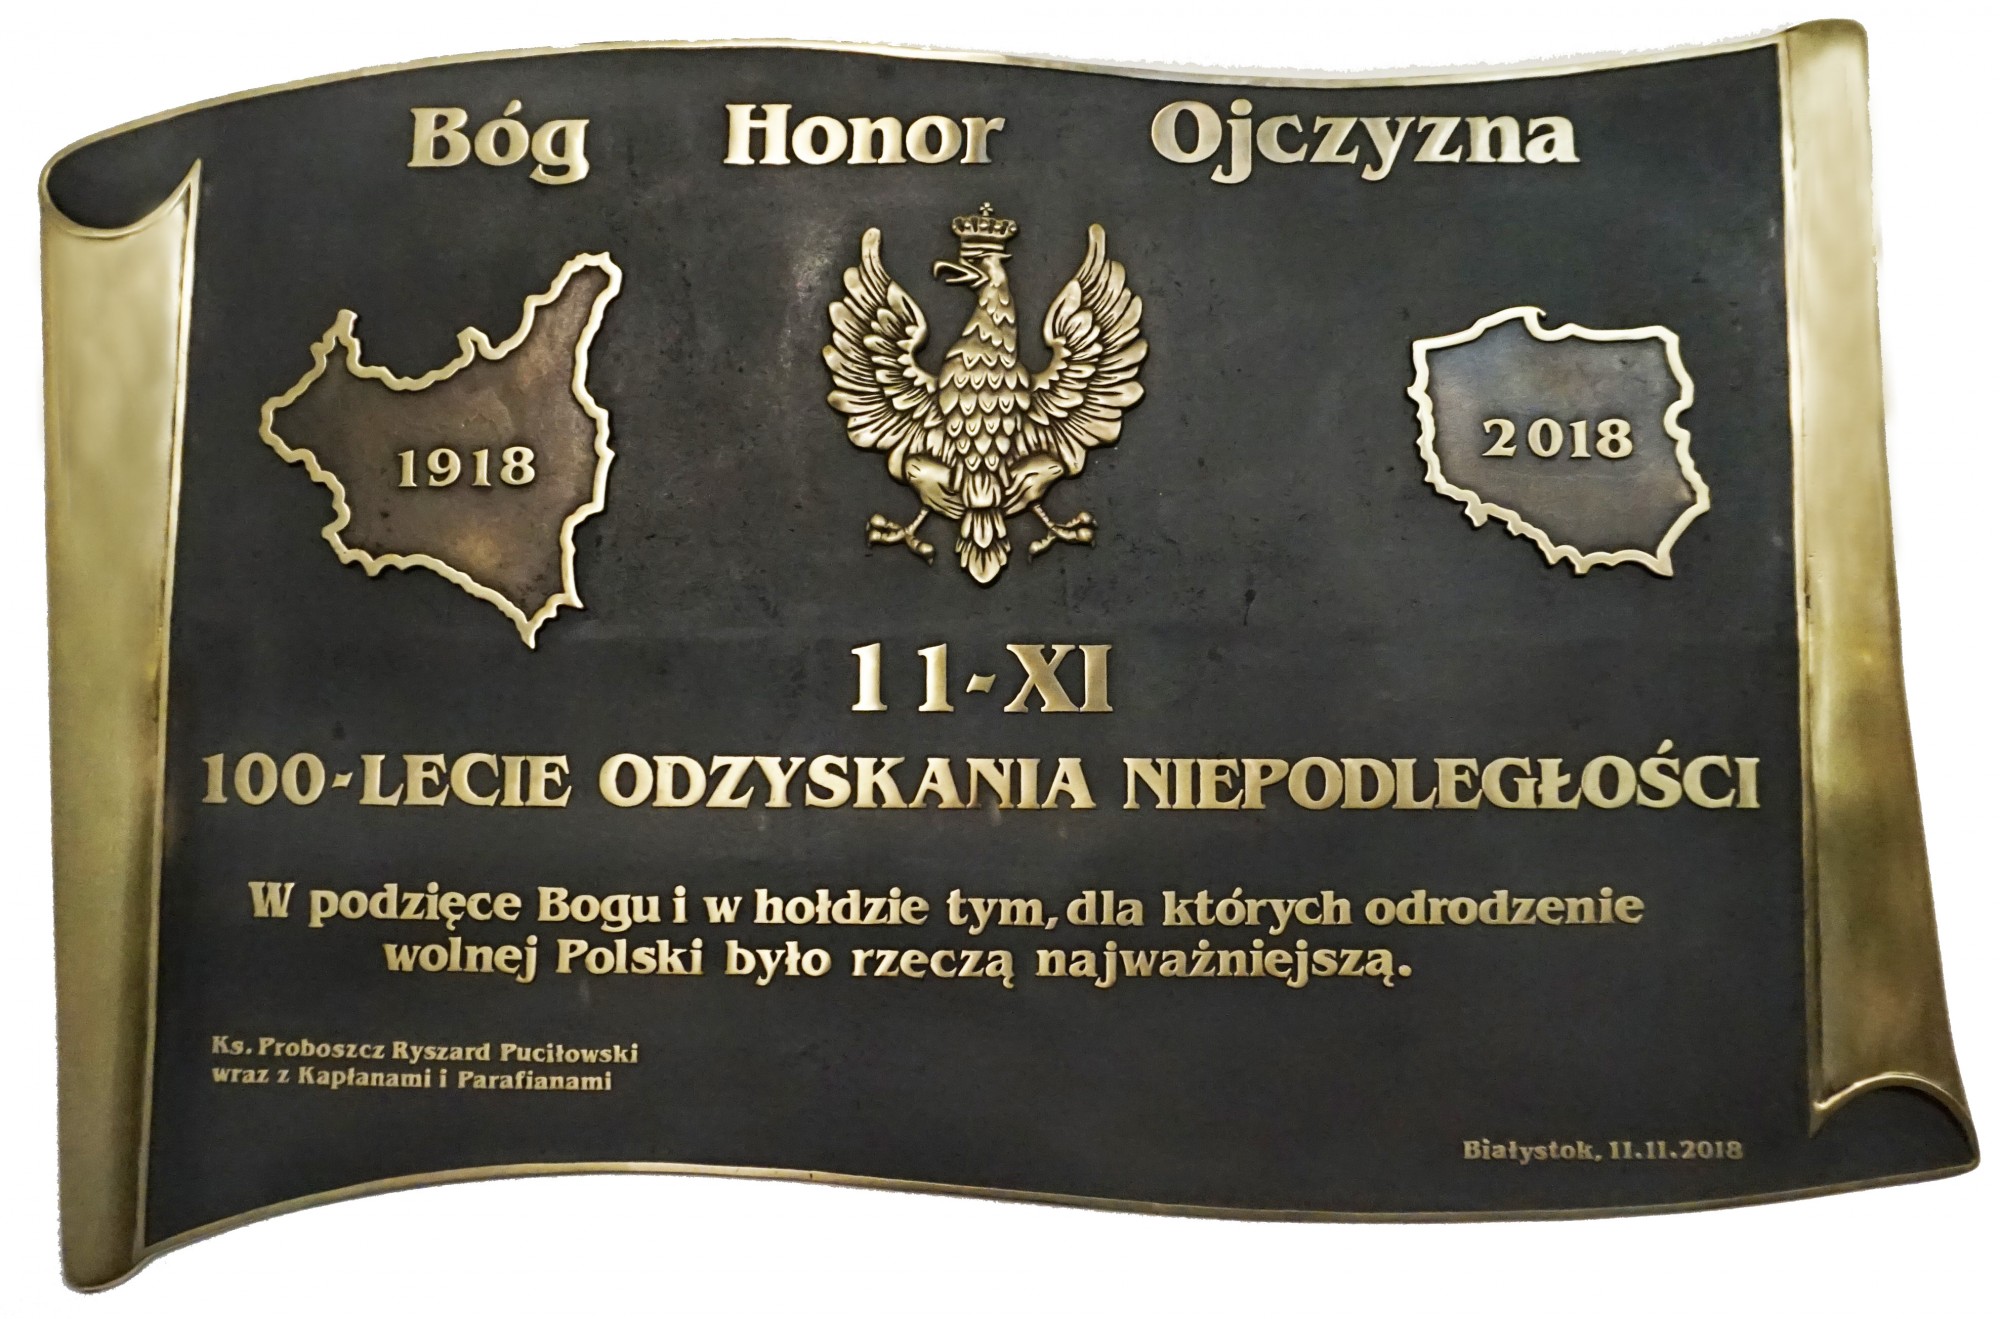 TABLICA NIEPODLEGŁOŚCIOWA,  tablica okolicznościowa wykonana z okazji odzyskania przez Polskę niepodległości, wym. 85x130 cm; mosiądz cyzelowany,  oksydowany i woskowany; 